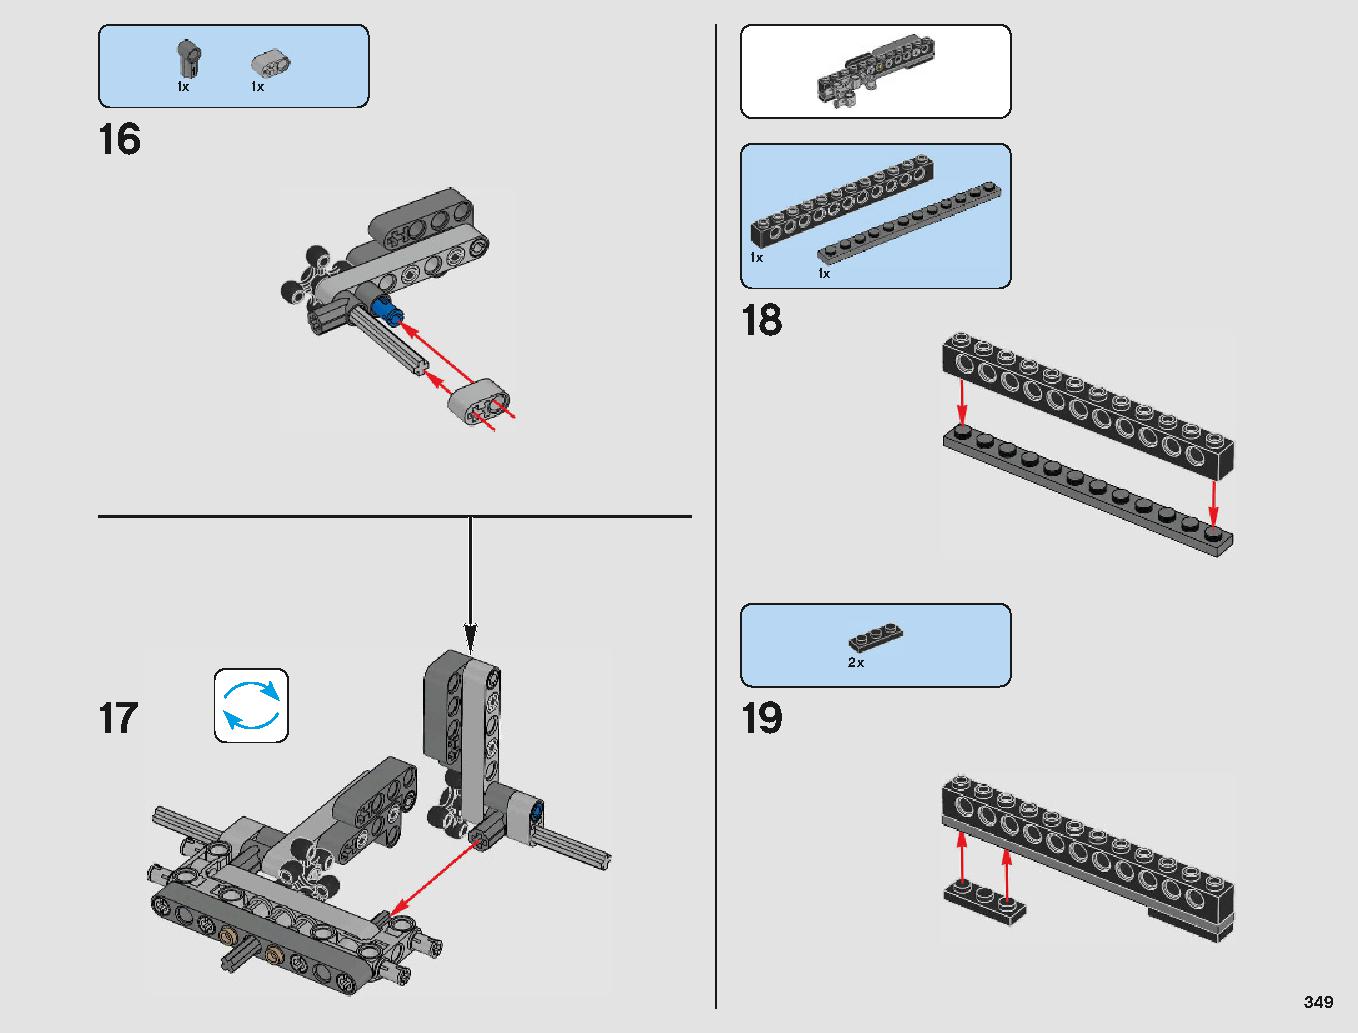 クラウド・シティ 75222 レゴの商品情報 レゴの説明書・組立方法 349 page